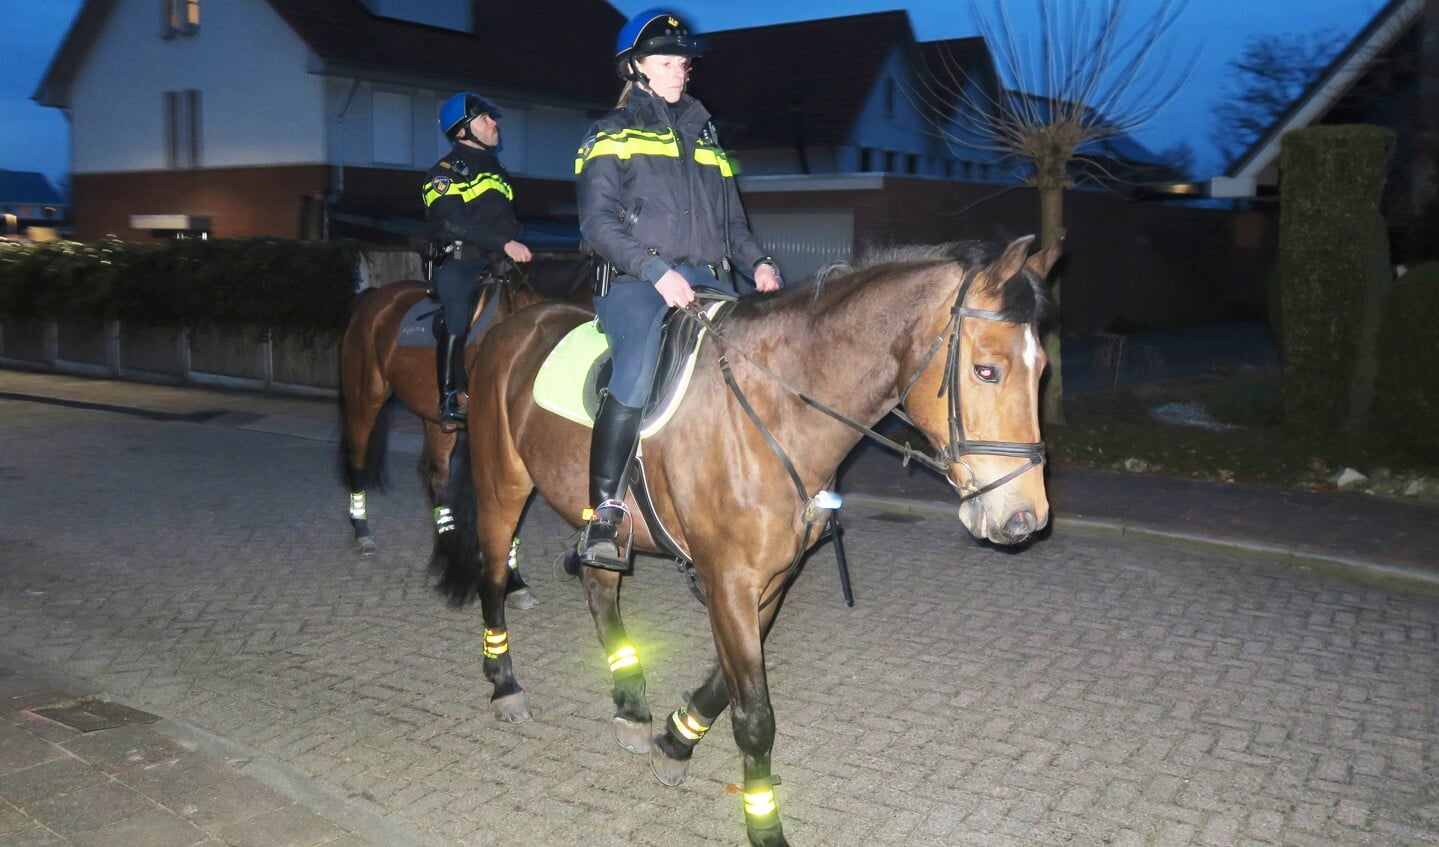 Politie te paard in Groenlo tijdens een preventieactie i.v.m. inbraken in Groenlo. Foto: Theo Huijskes